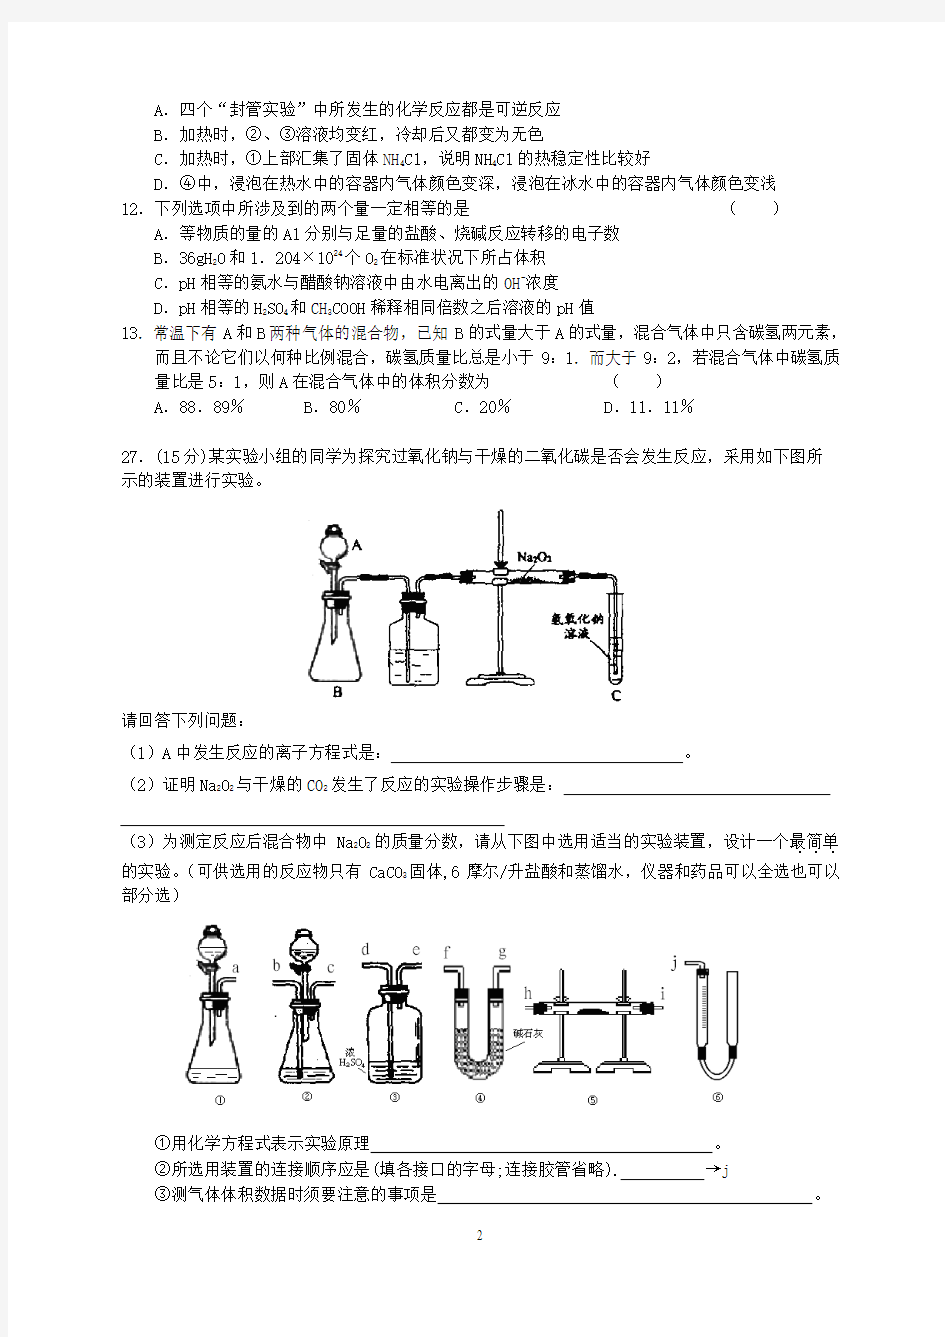 宜阳县实验中学高三化学二轮模拟考试(10)